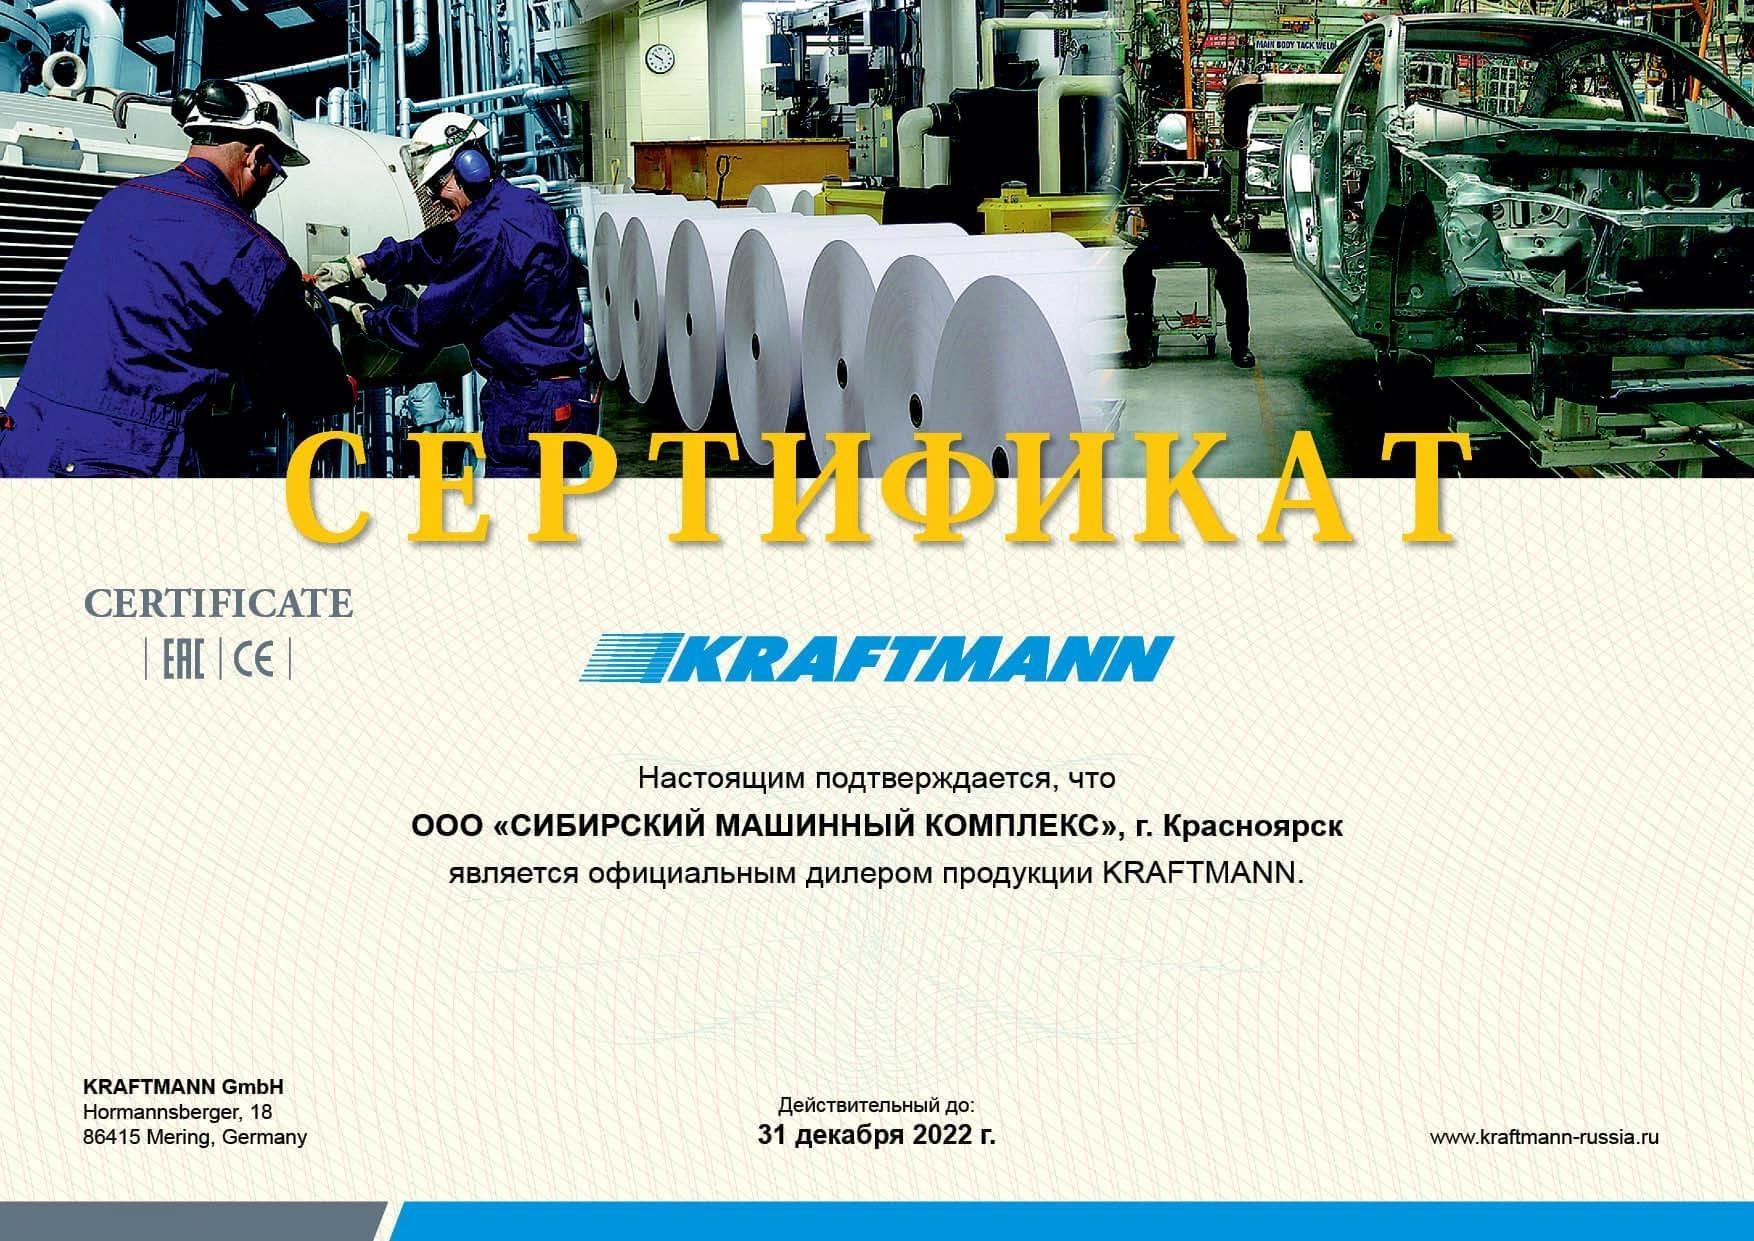 Сертификат дилерства KRAFTMANN – СМК г. Красноярск